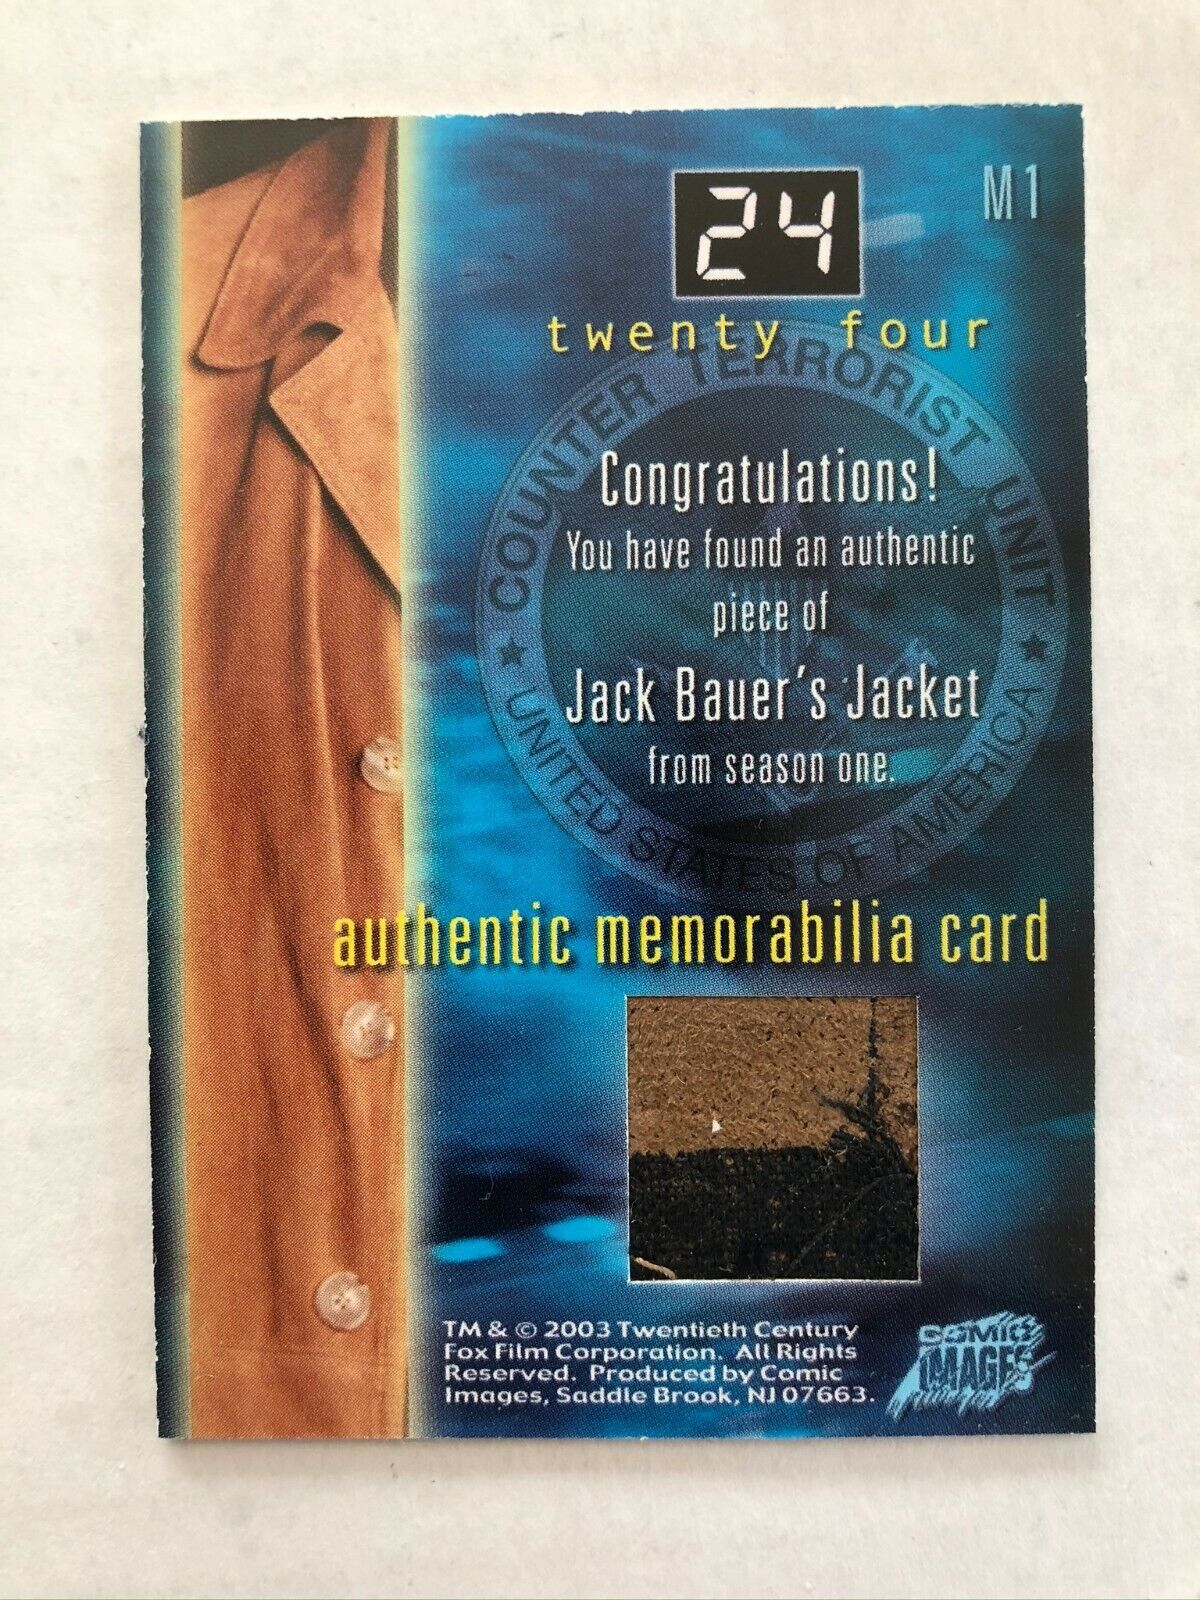 24 TWENTY FOUR JACK BAUER'S JACKET MEMORABILIA CARD COMIC IMAGES M1 2003